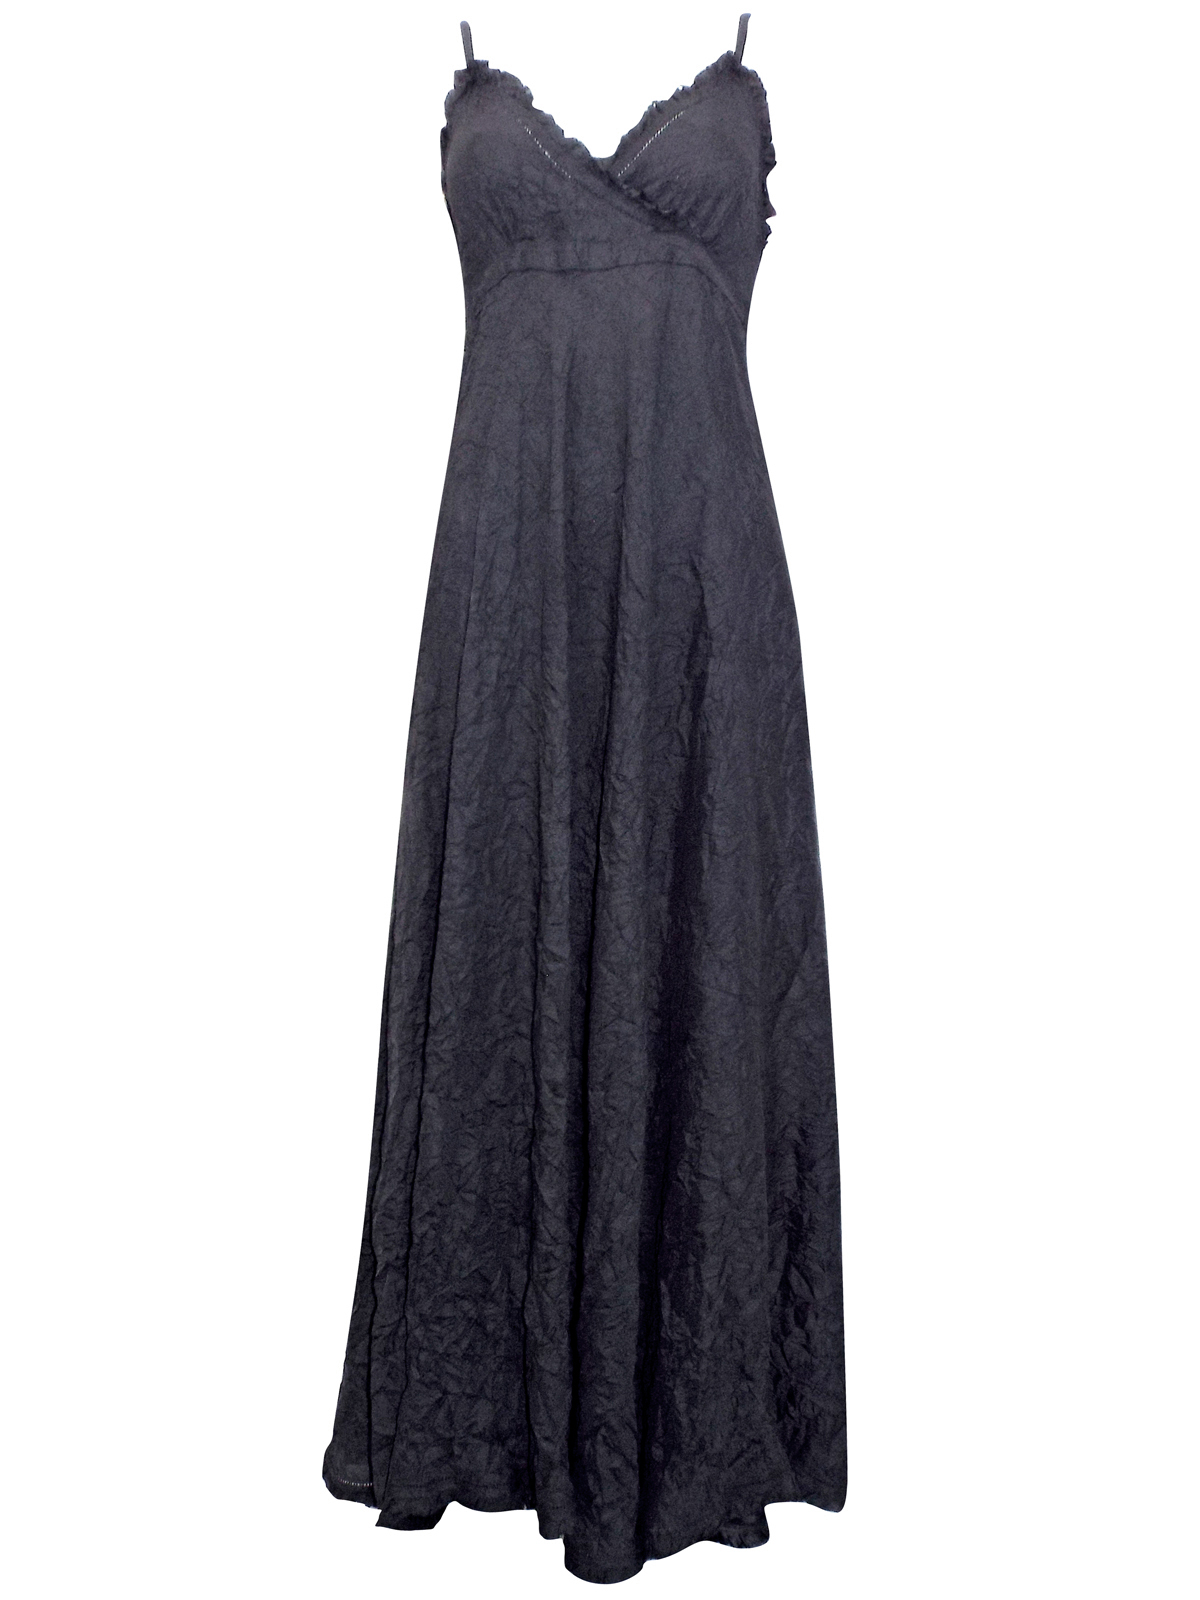 Milla - - Milla BLACK Sleeveless Crinkle Maxi Dress - Size 10 to 22 (EU ...